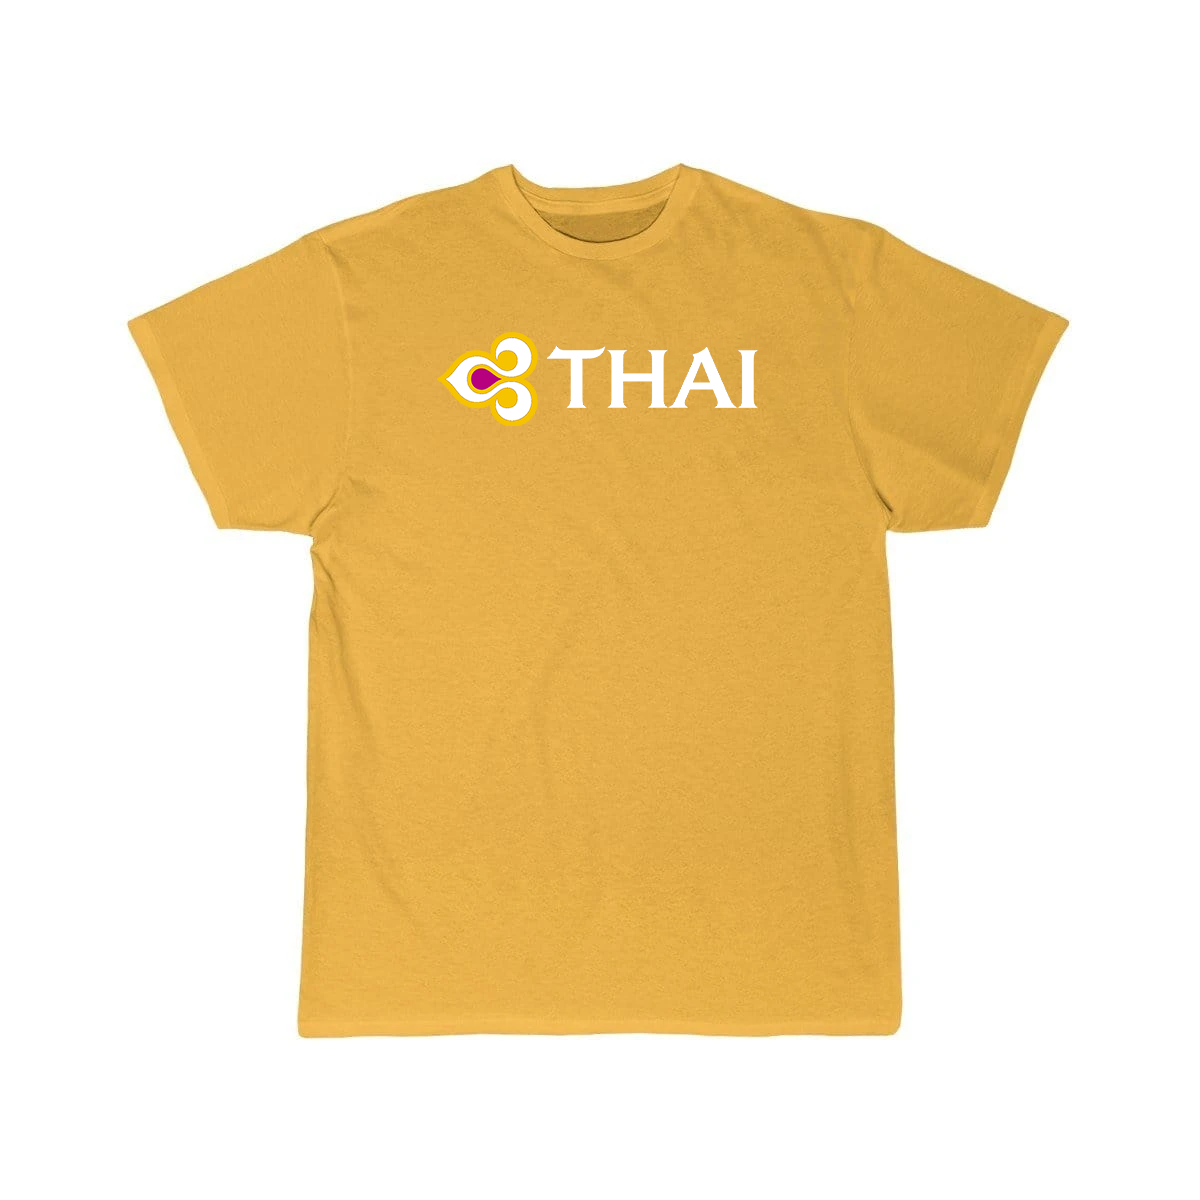 THAI AIRLINE T-SHIRT